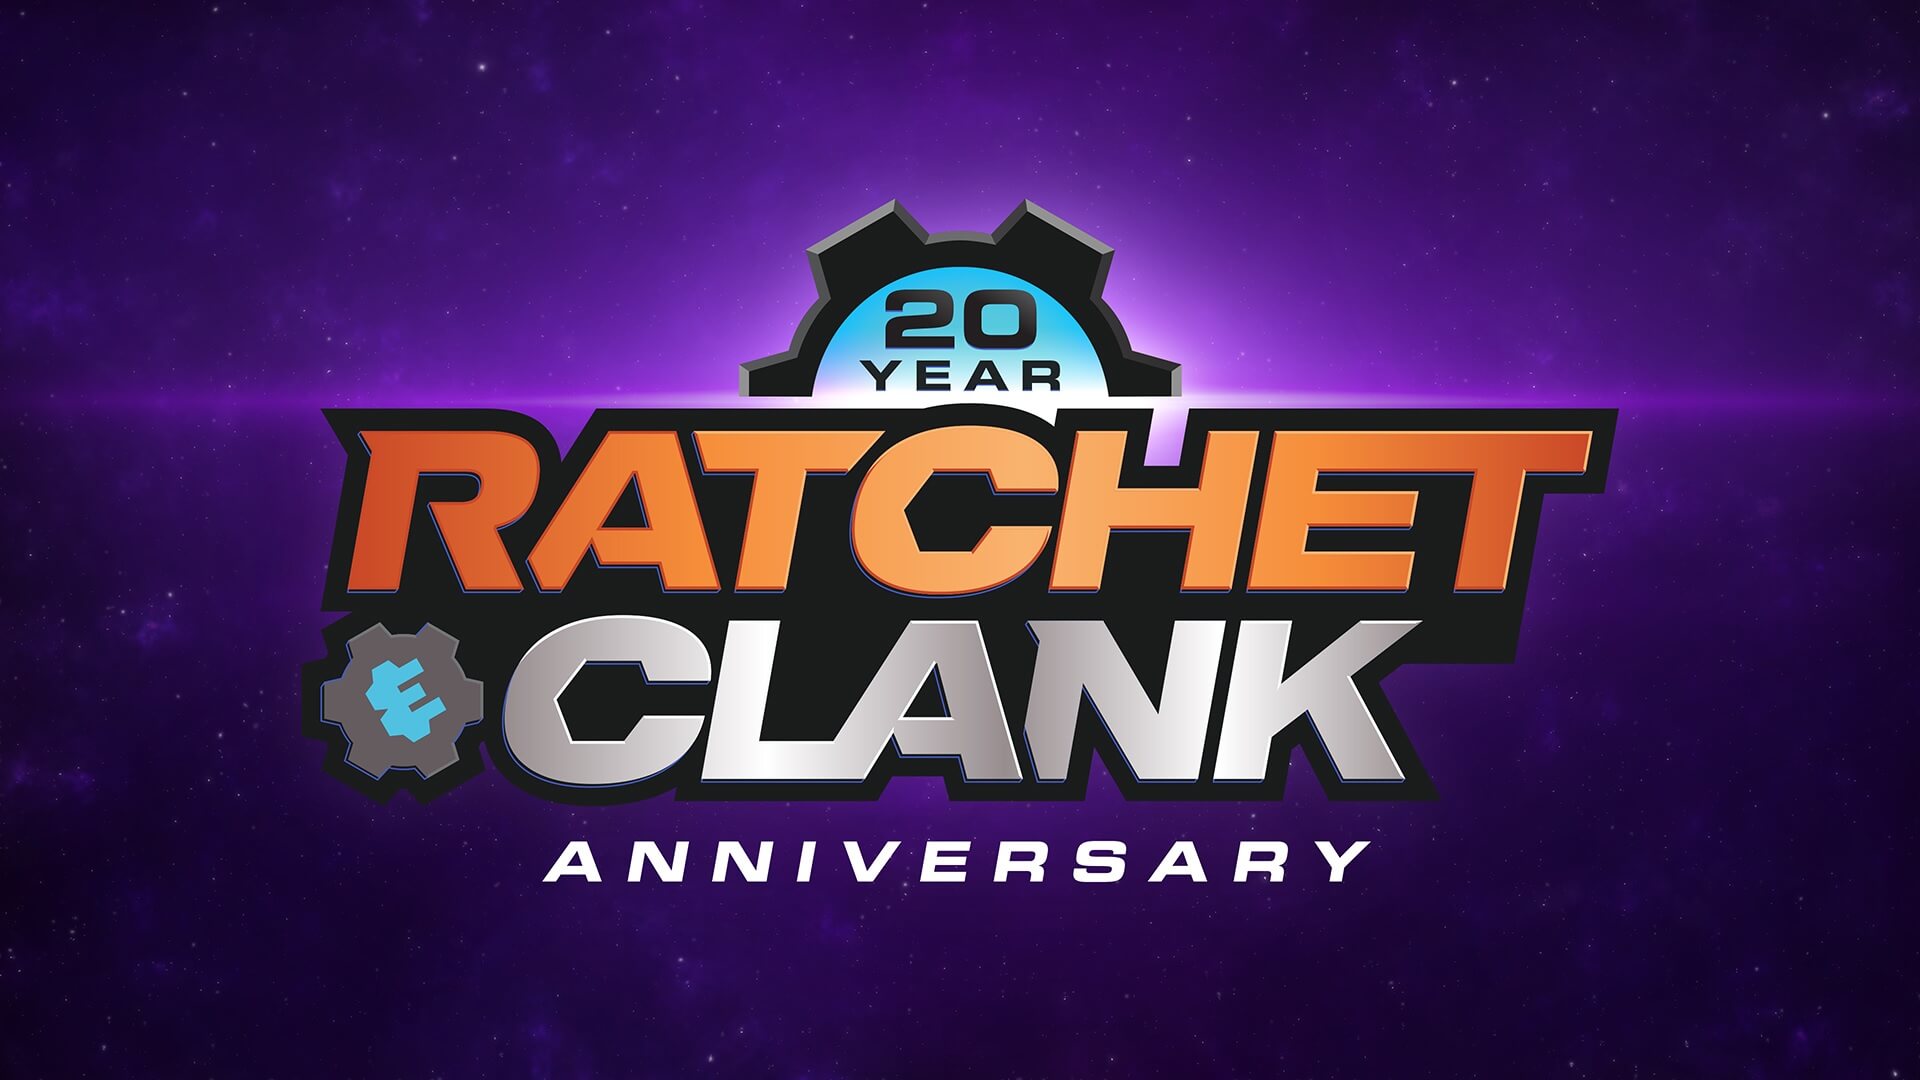 Ratchet & Clank celebra su 20 aniversario añadiendo sus juegos en PS Plus